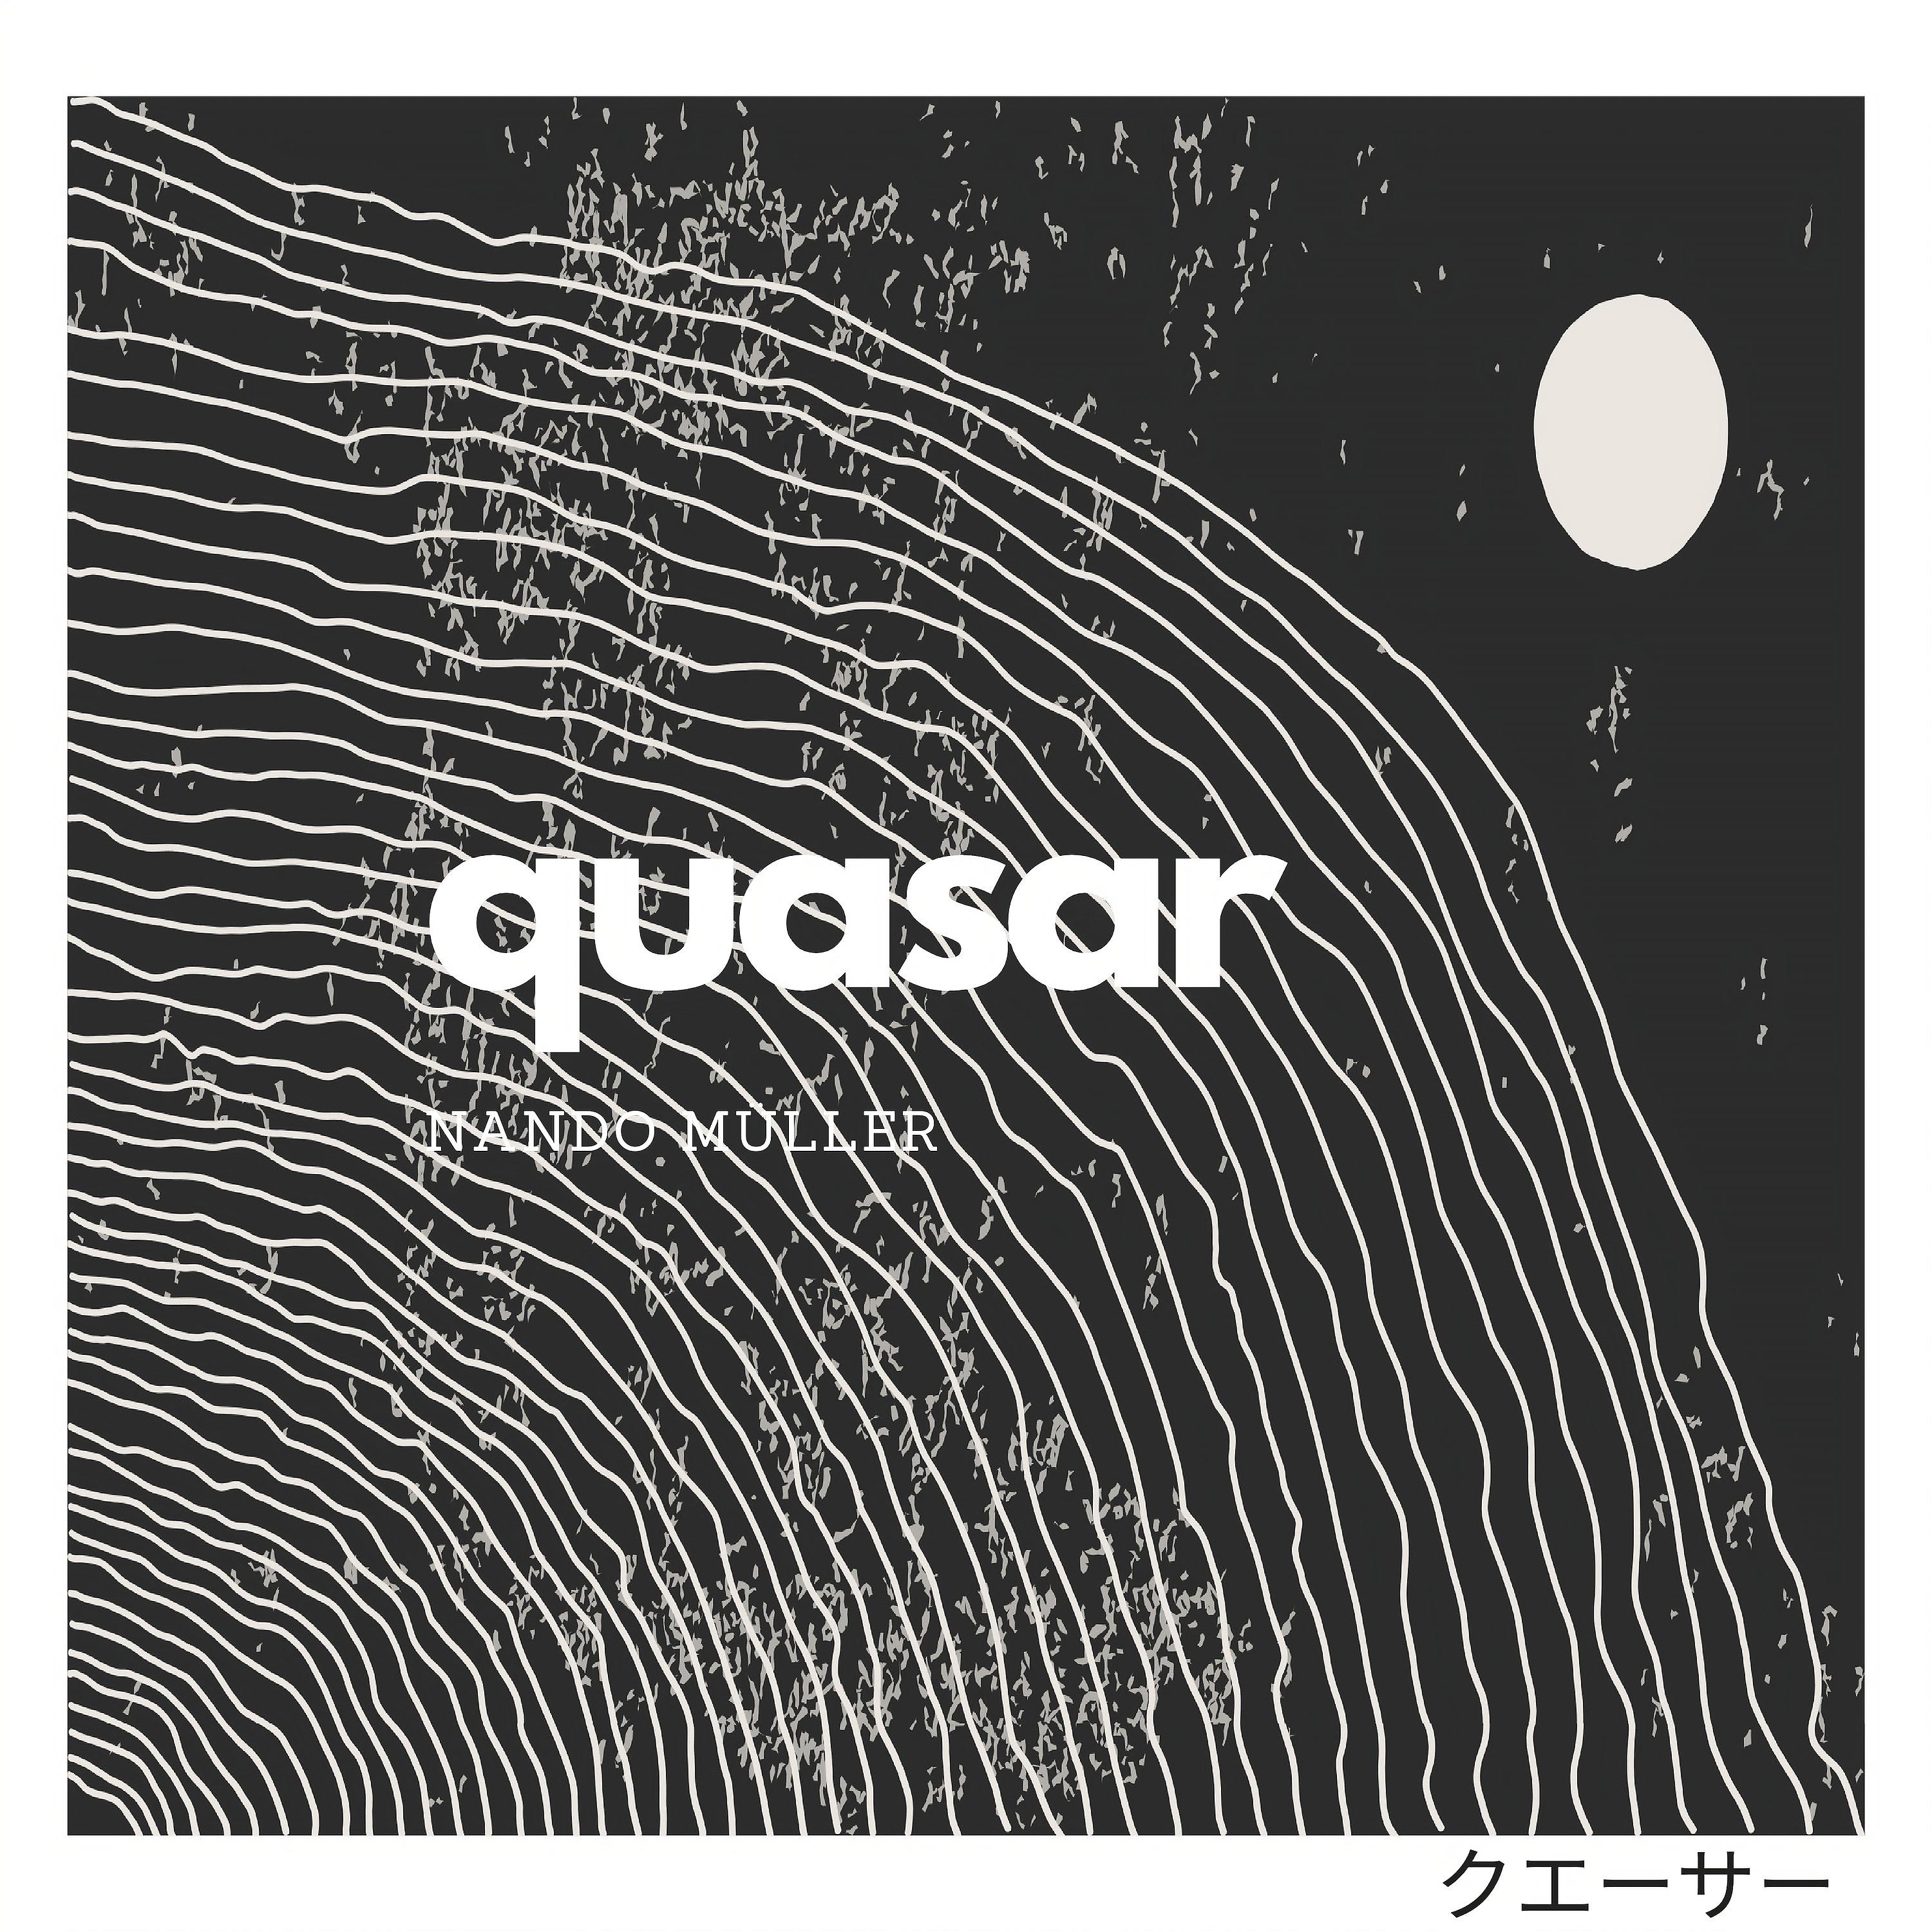 Постер альбома Quasar